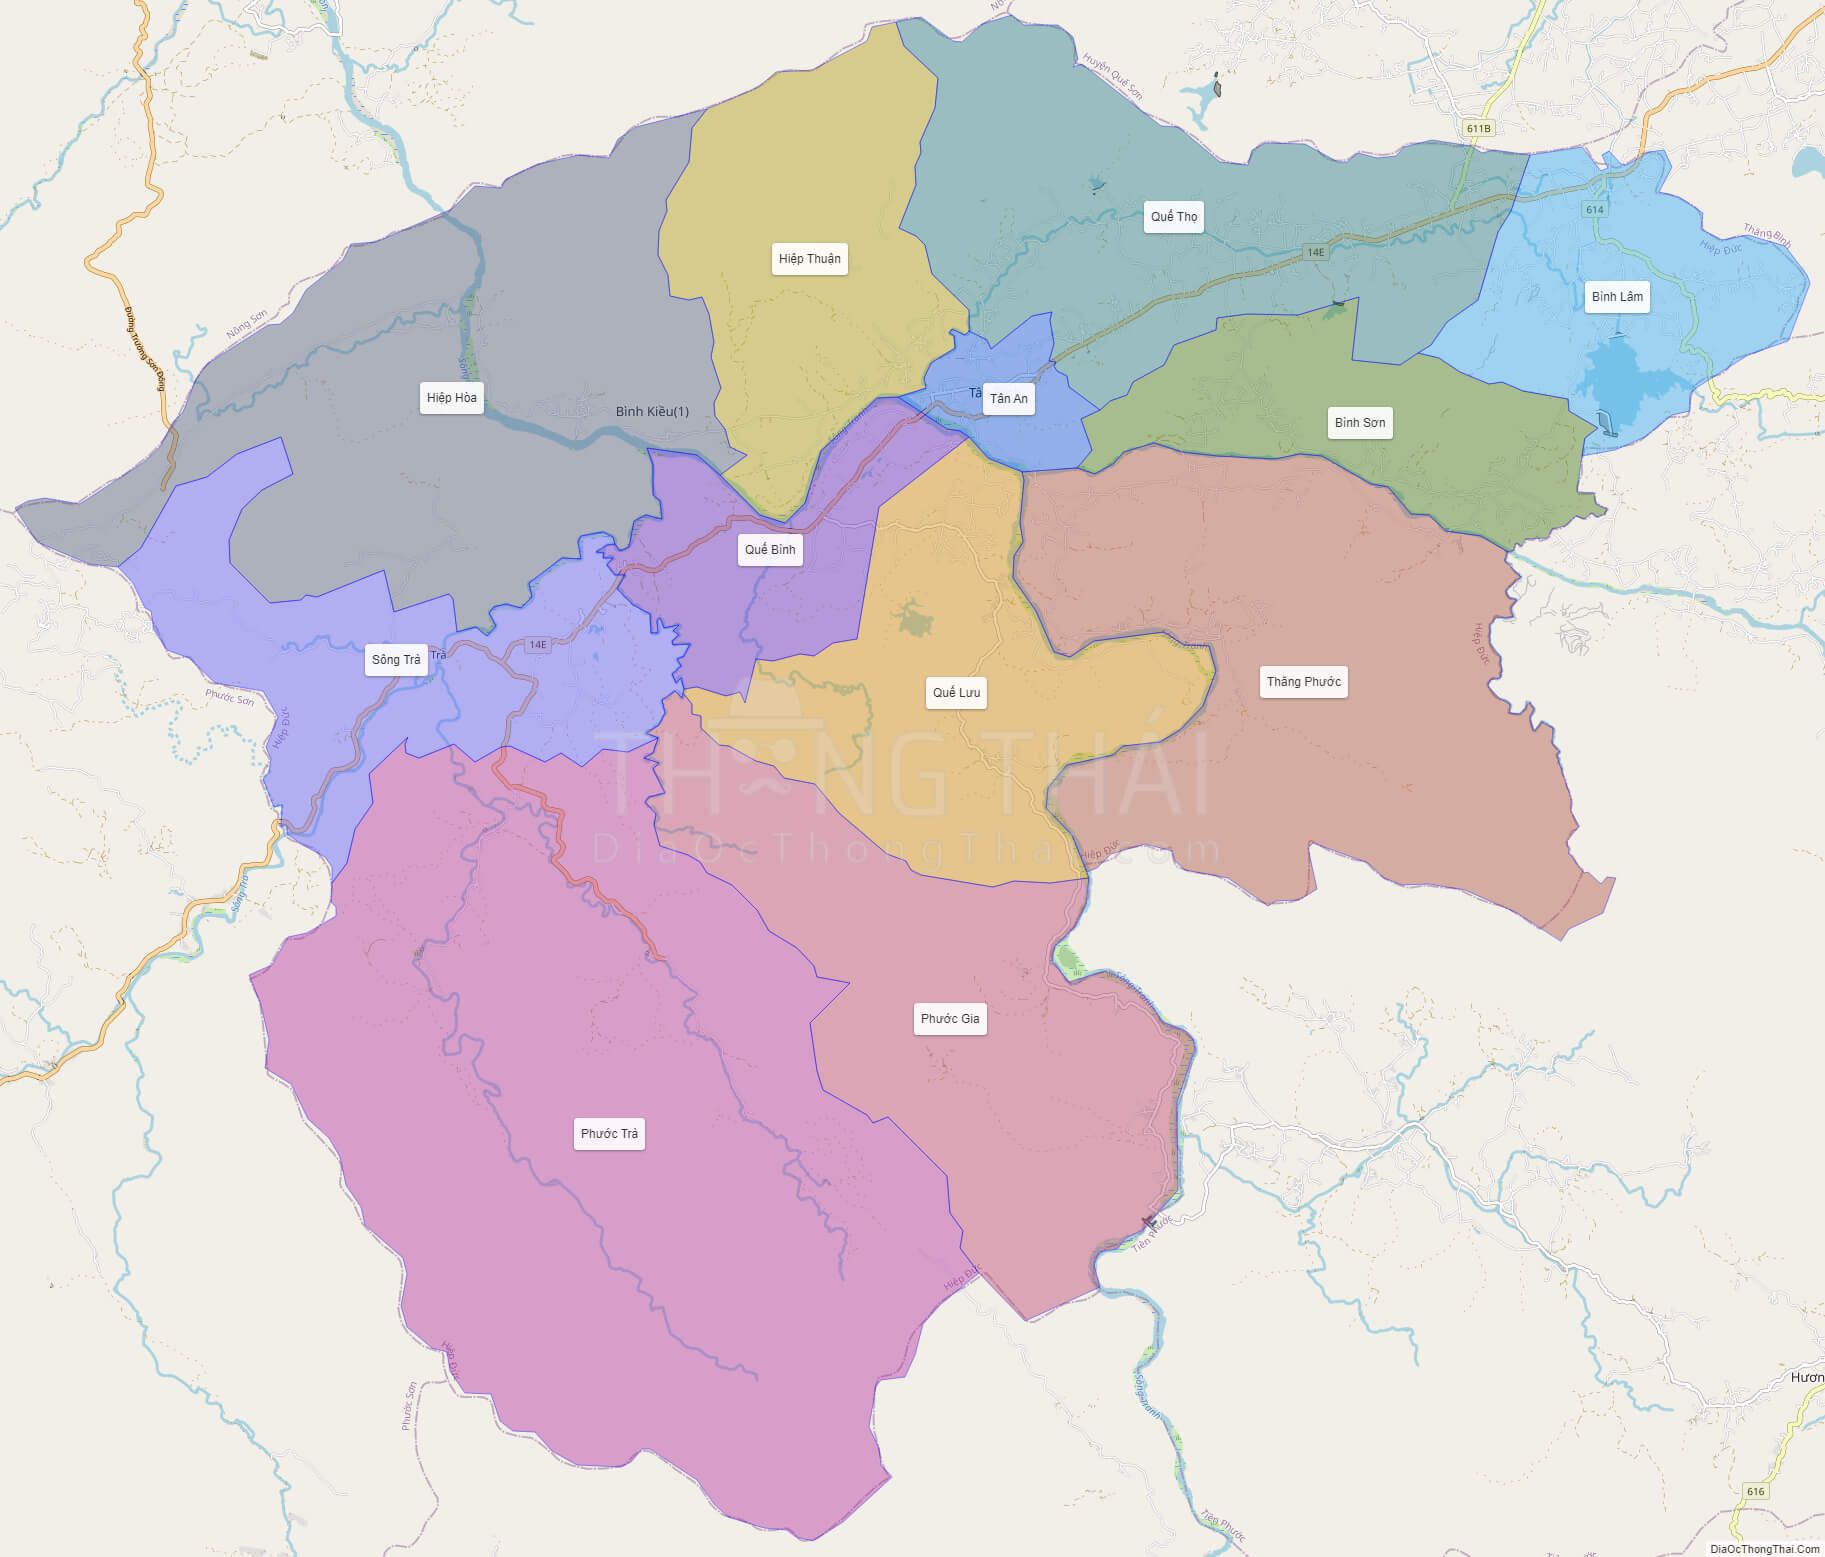 Bản đồ huyện Hiệp Đức Quảng Nam sẽ là công cụ hữu ích cho bạn khi muốn tìm hiểu về khu vực này. Với các thông tin chi tiết về địa lý, tài nguyên và đặc sản của huyện, bạn có thể lên kế hoạch và trải nghiệm một chuyến đi tuyệt vời tại vùng đất này.